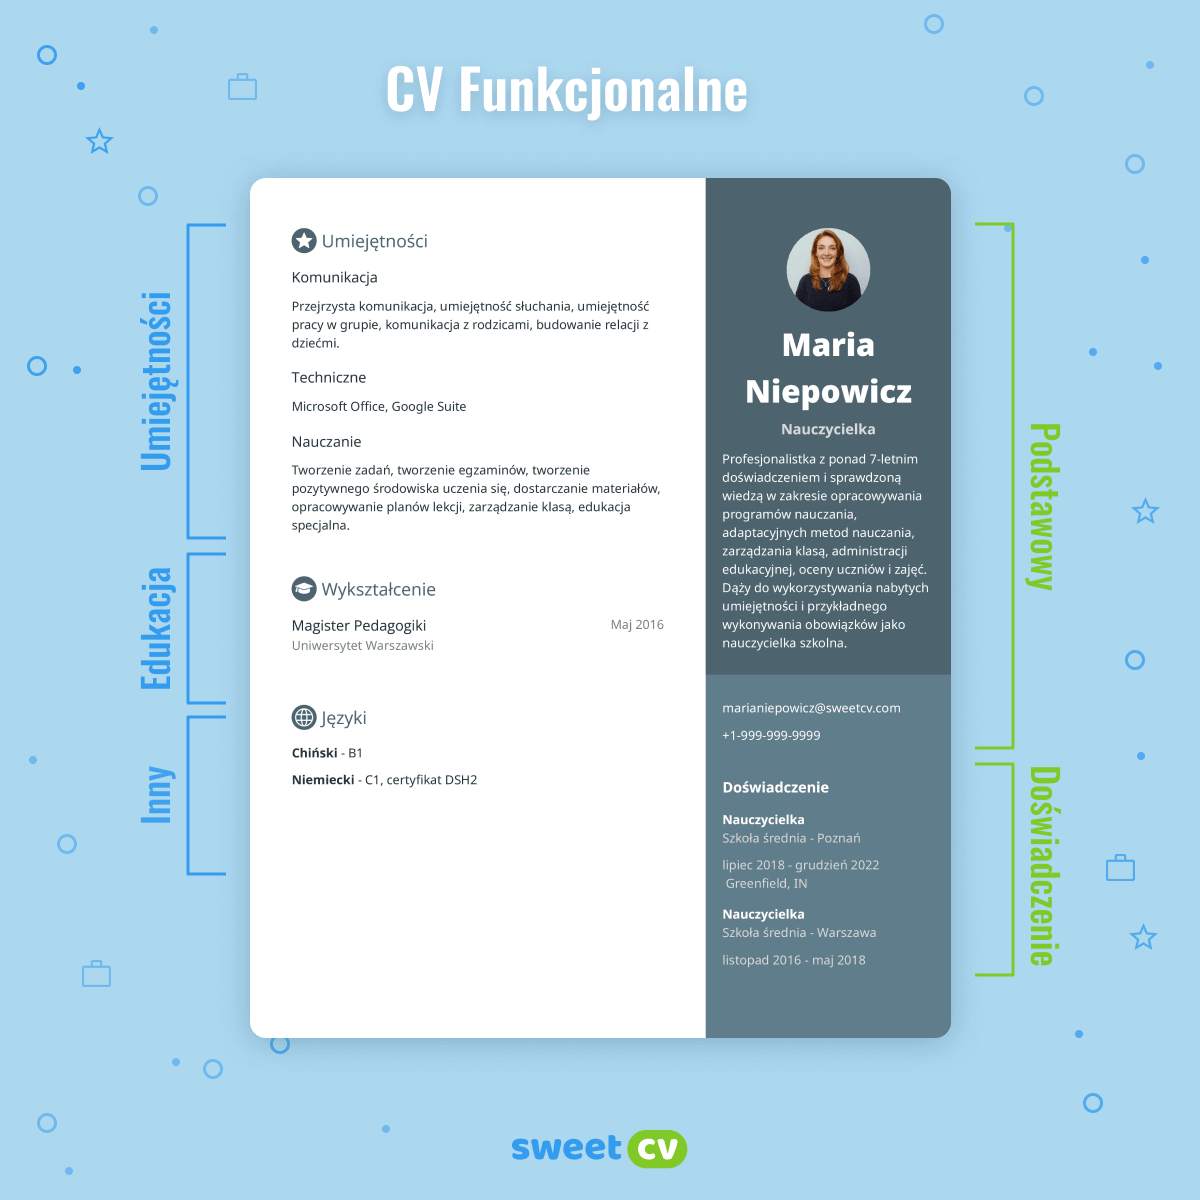 Użyj funkcjonalnego CV, gdy nie masz doświadczenia lub gdy jest ono niewielkie